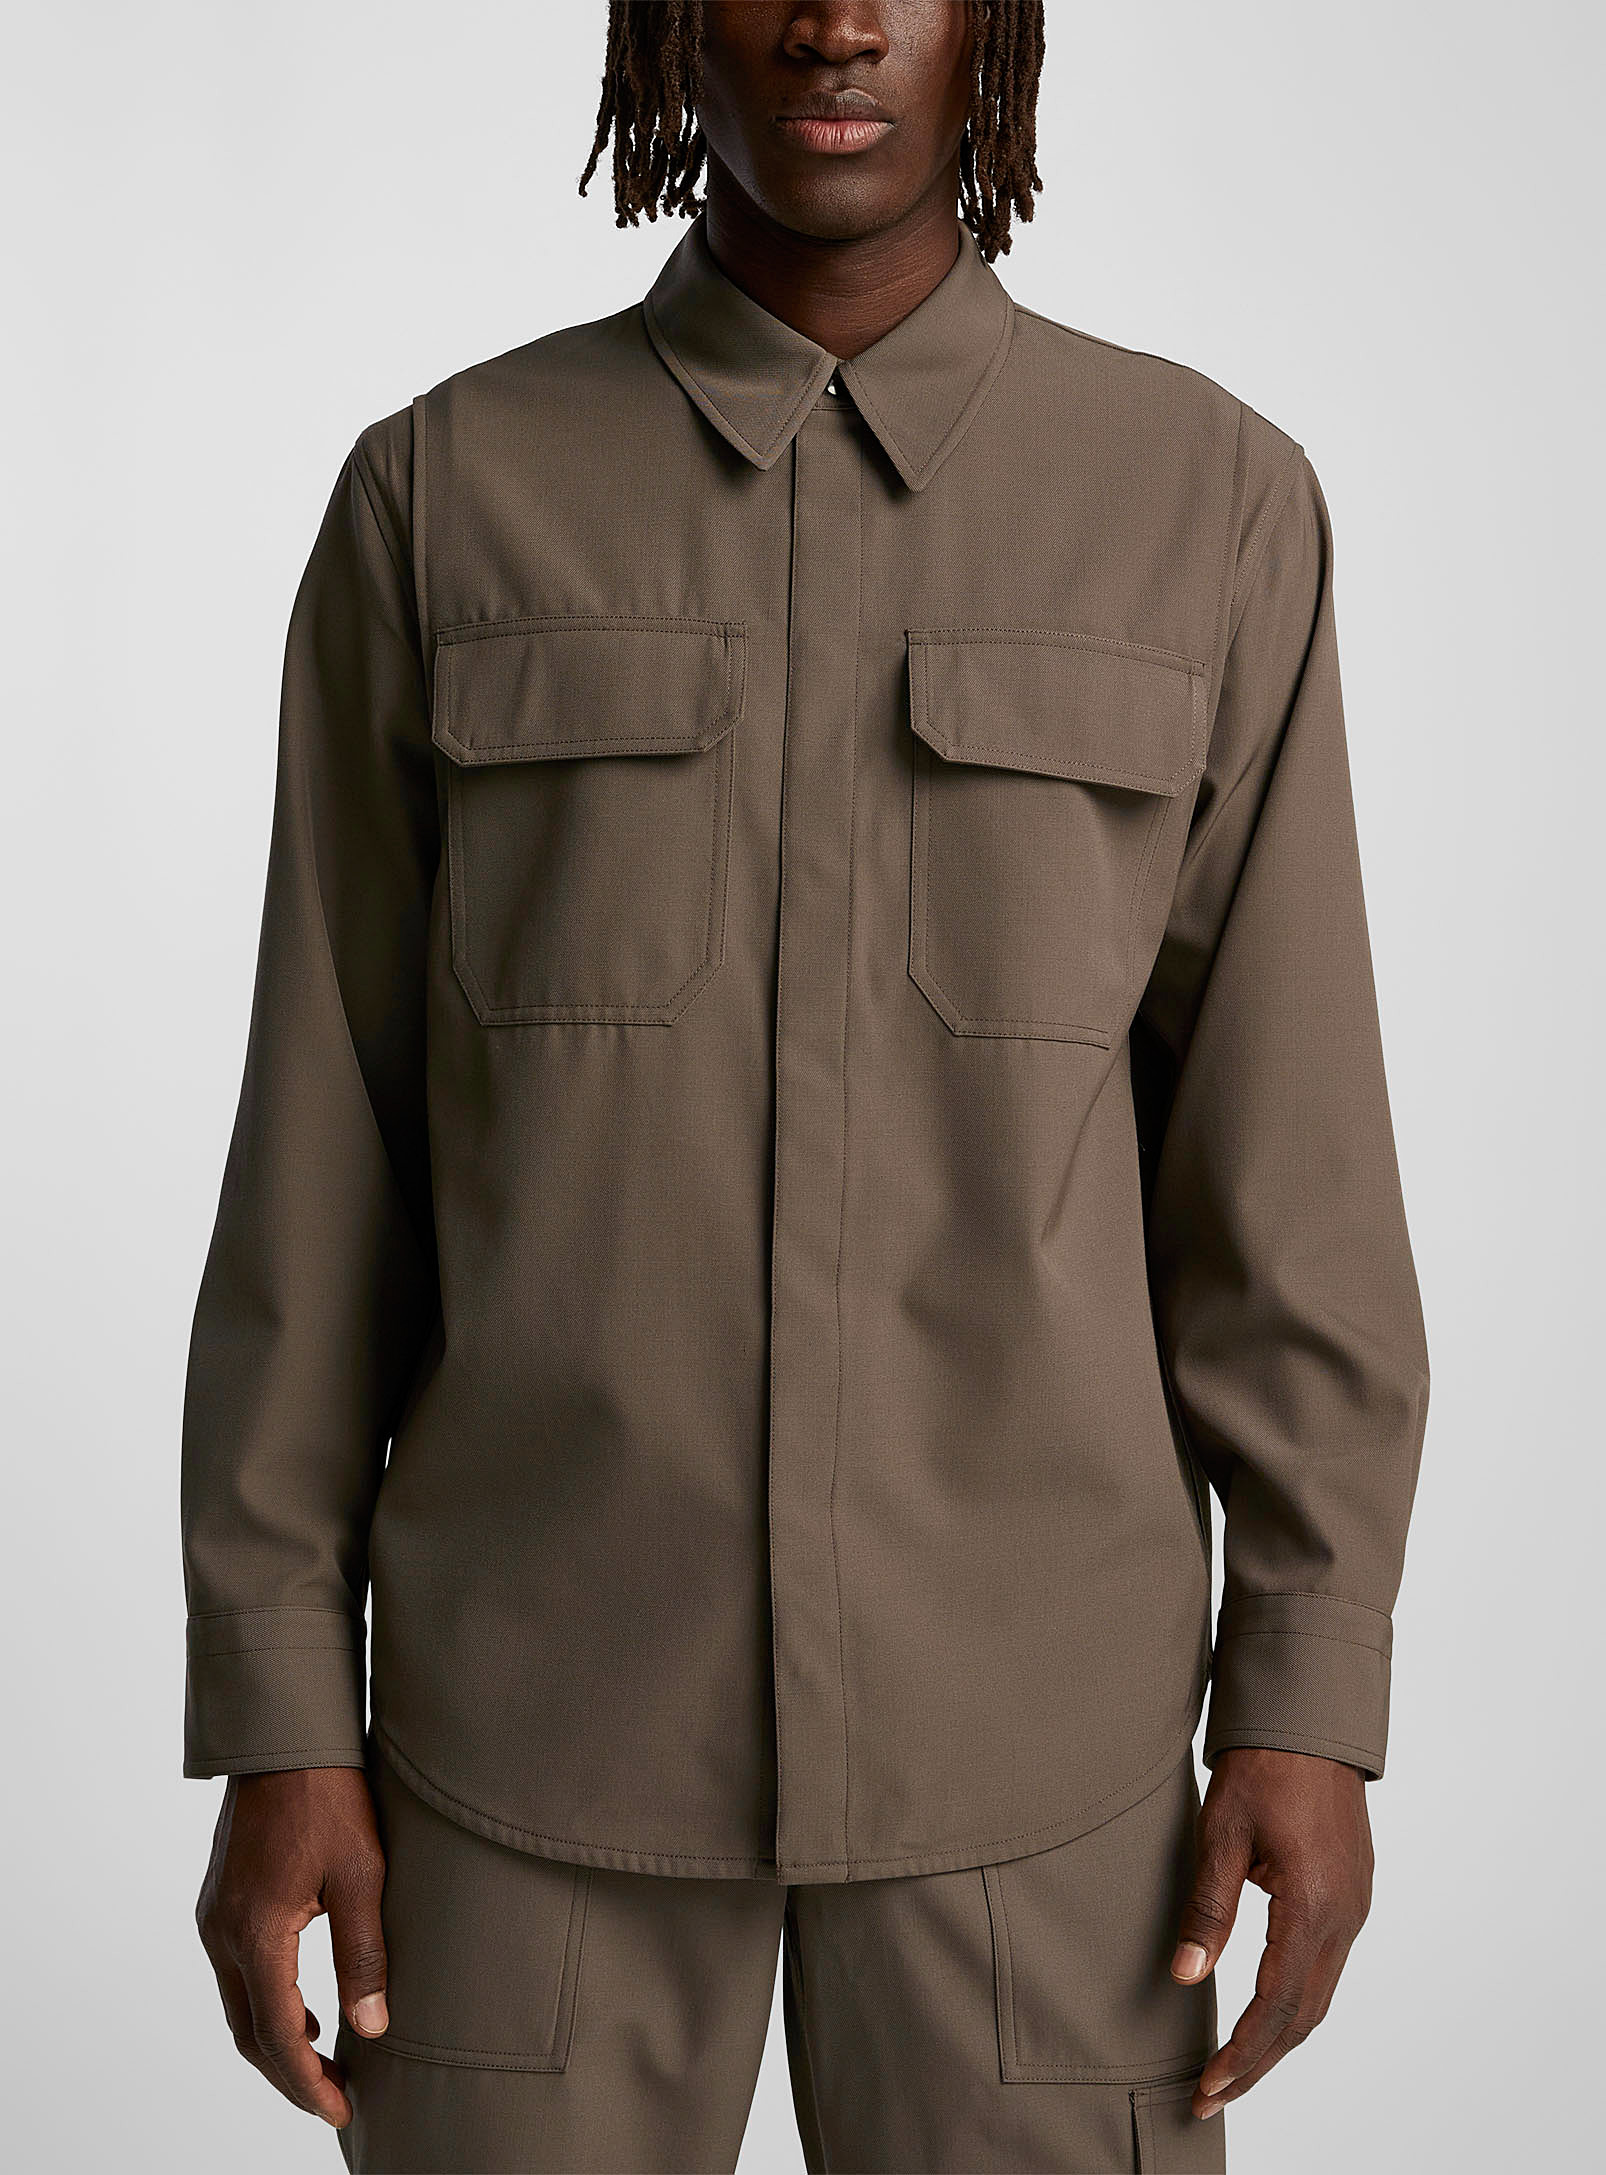 Helmut Lang - La chemise militaire poches plaquées